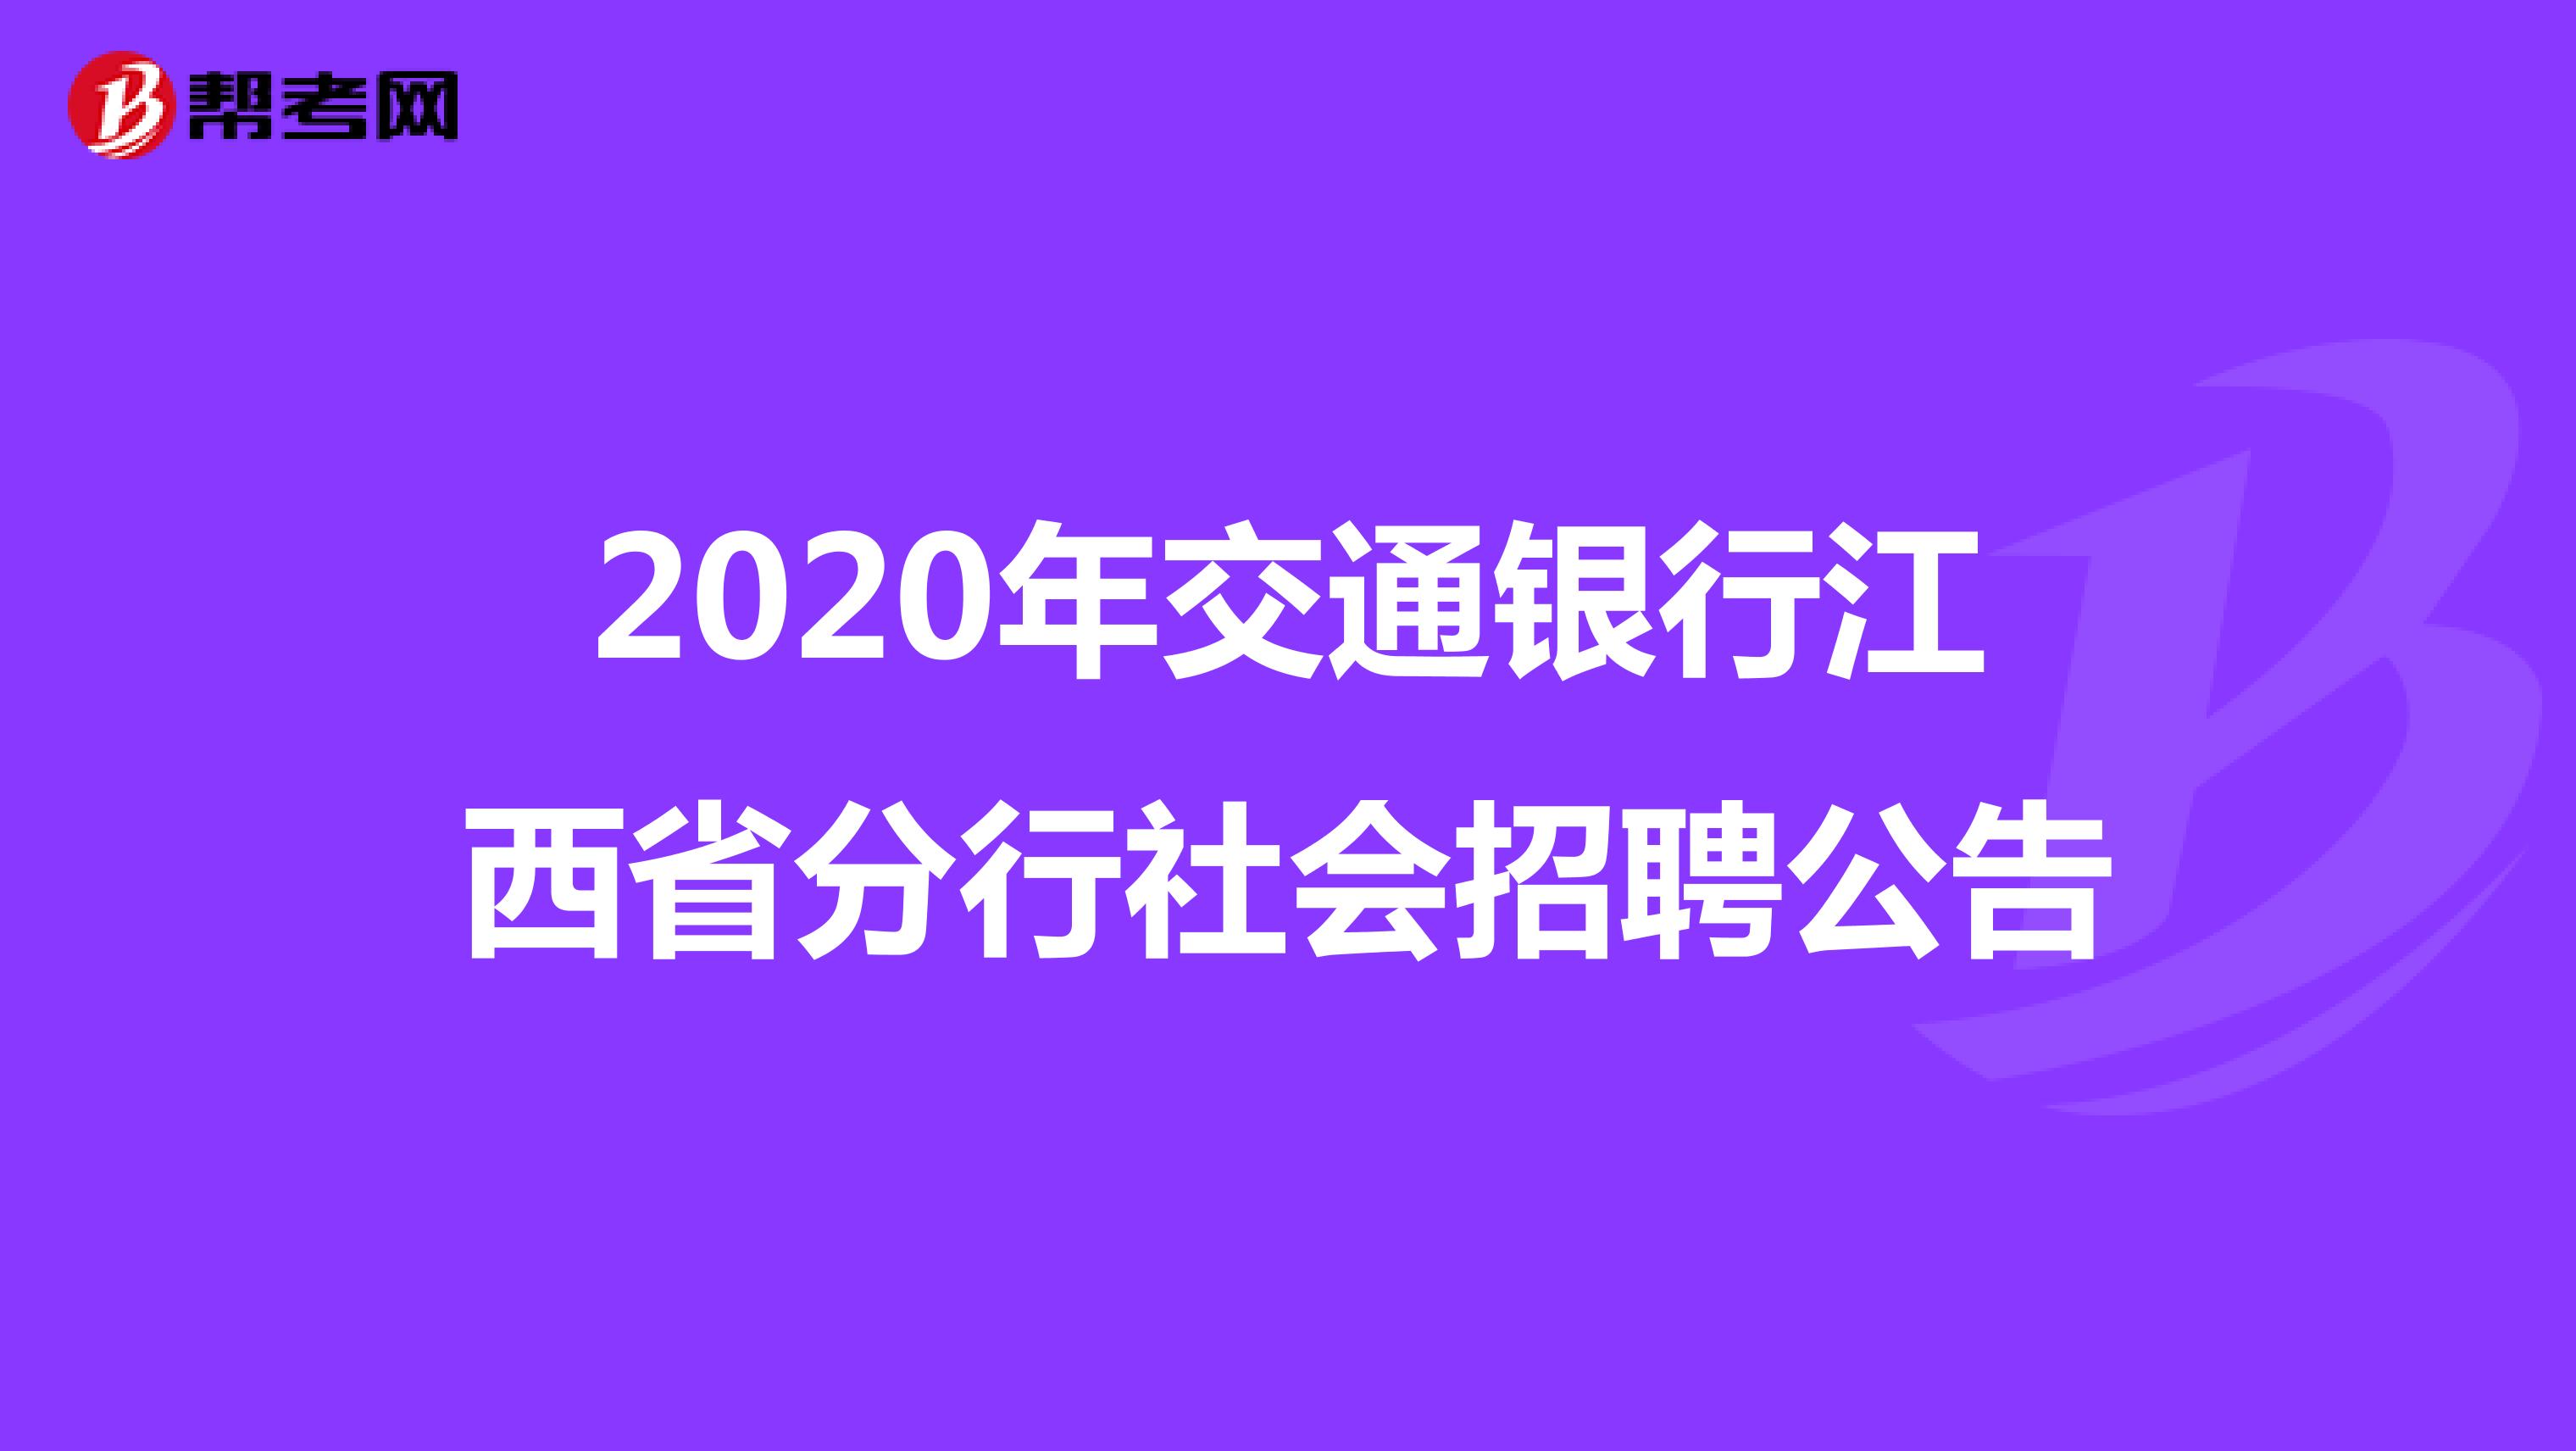 2020年交通银行江西省分行社会招聘公告